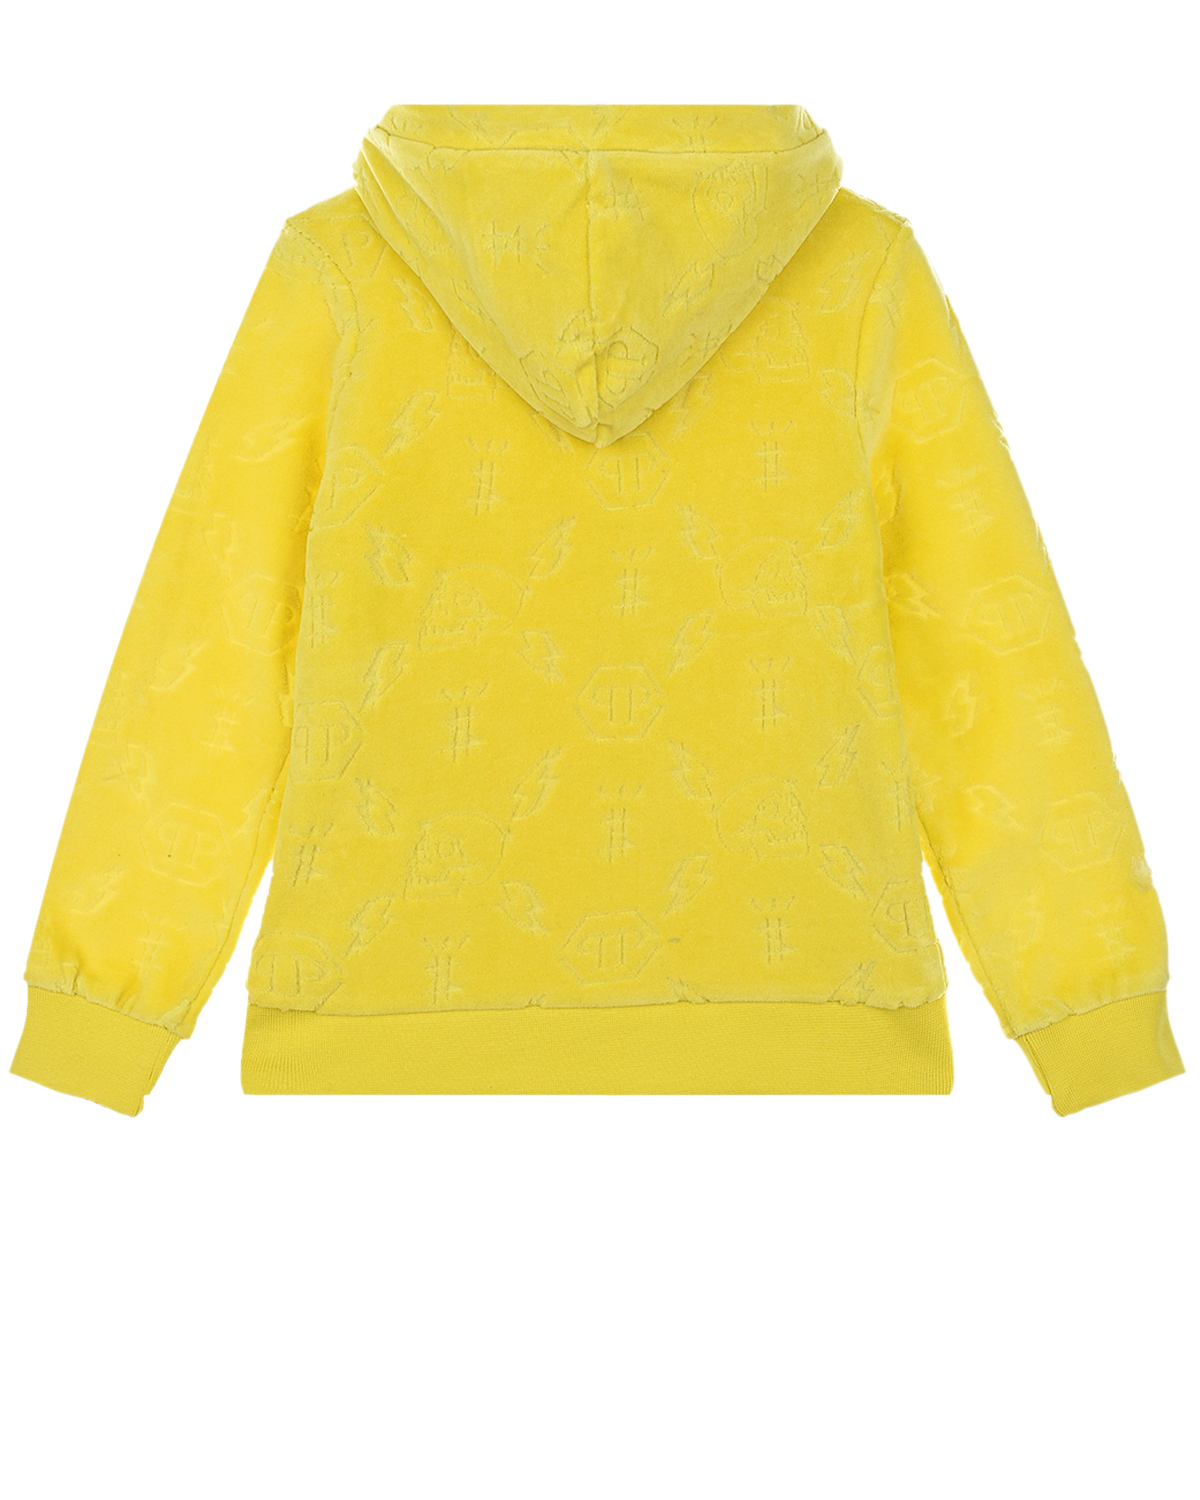 Желтая спортивная куртка Philipp Plein детская, размер 128, цвет желтый - фото 2